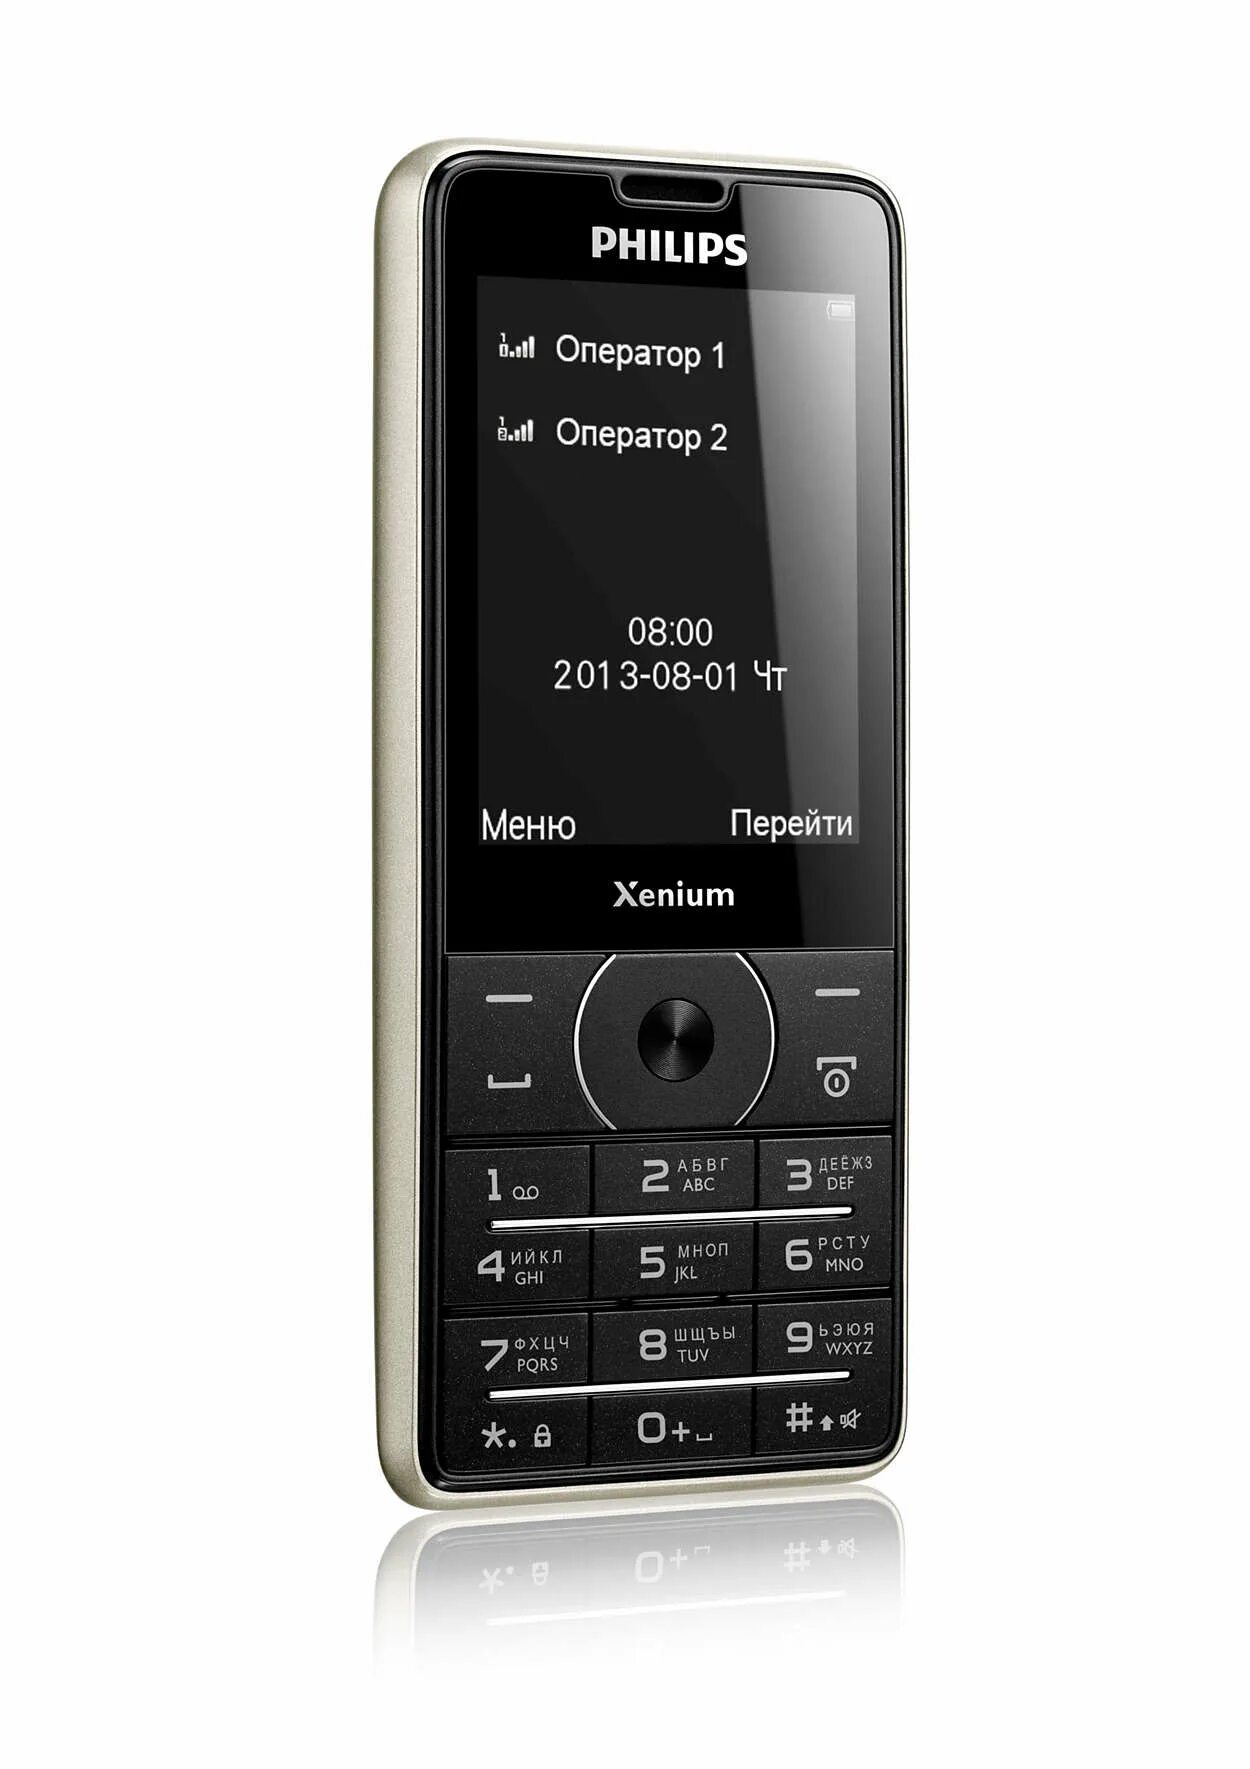 Philips Xenium x1560. Philips x1560 (Black). Philips Xenium 1560. Телефон Филипс Xenium 1560. Музыка филипс телефон